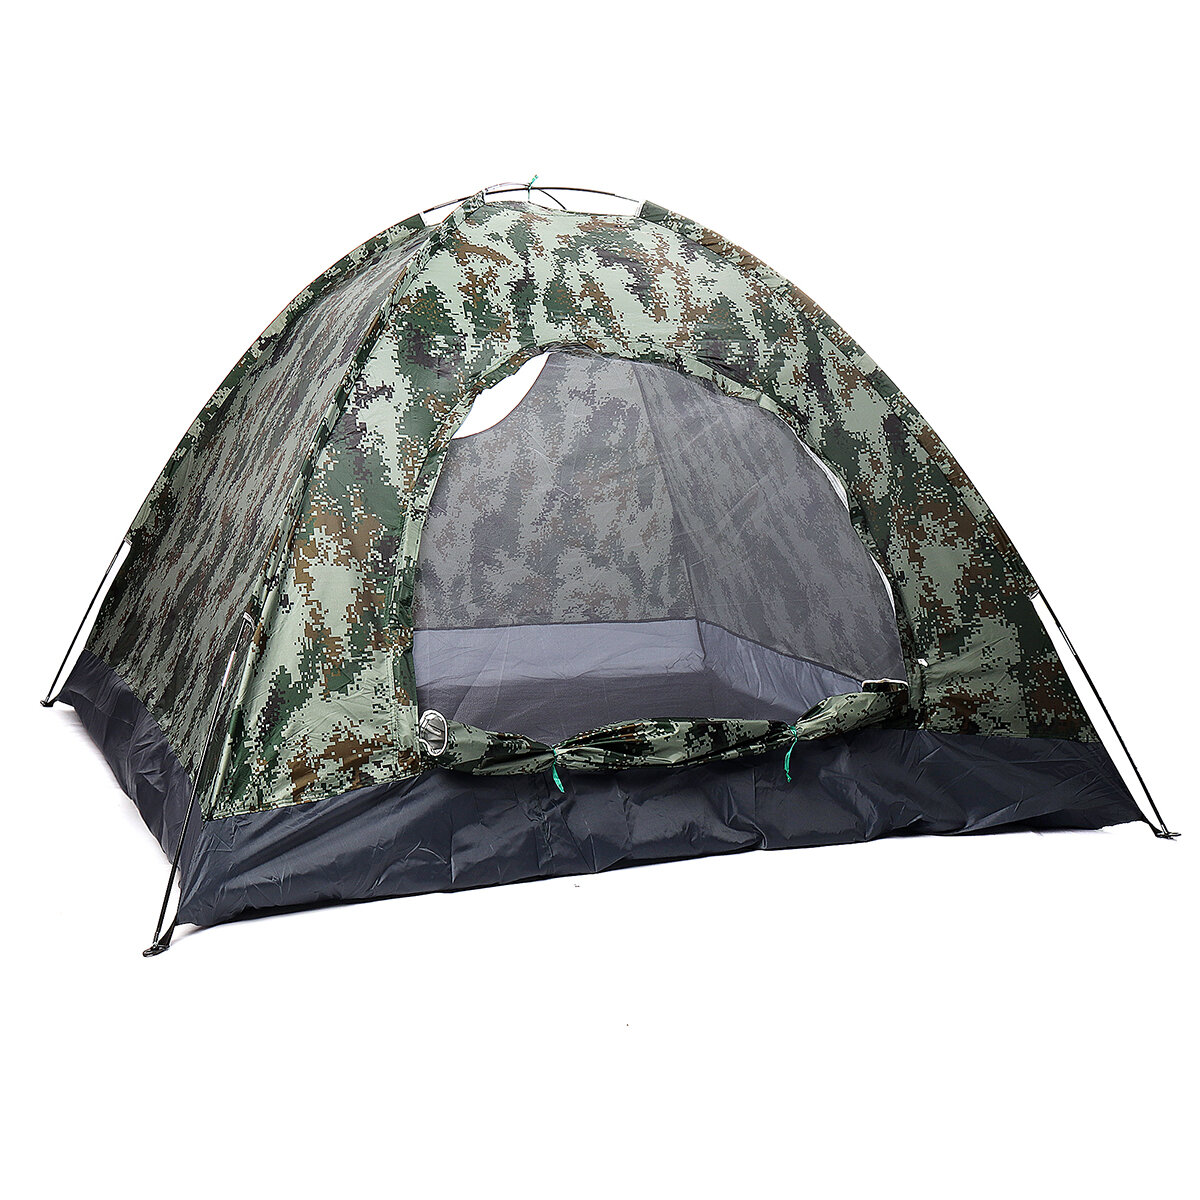 Waterdichte tent voor 3-4 personen met ronde deur voor kamperen en wandelen, outdoor slaapbenodigdheden.